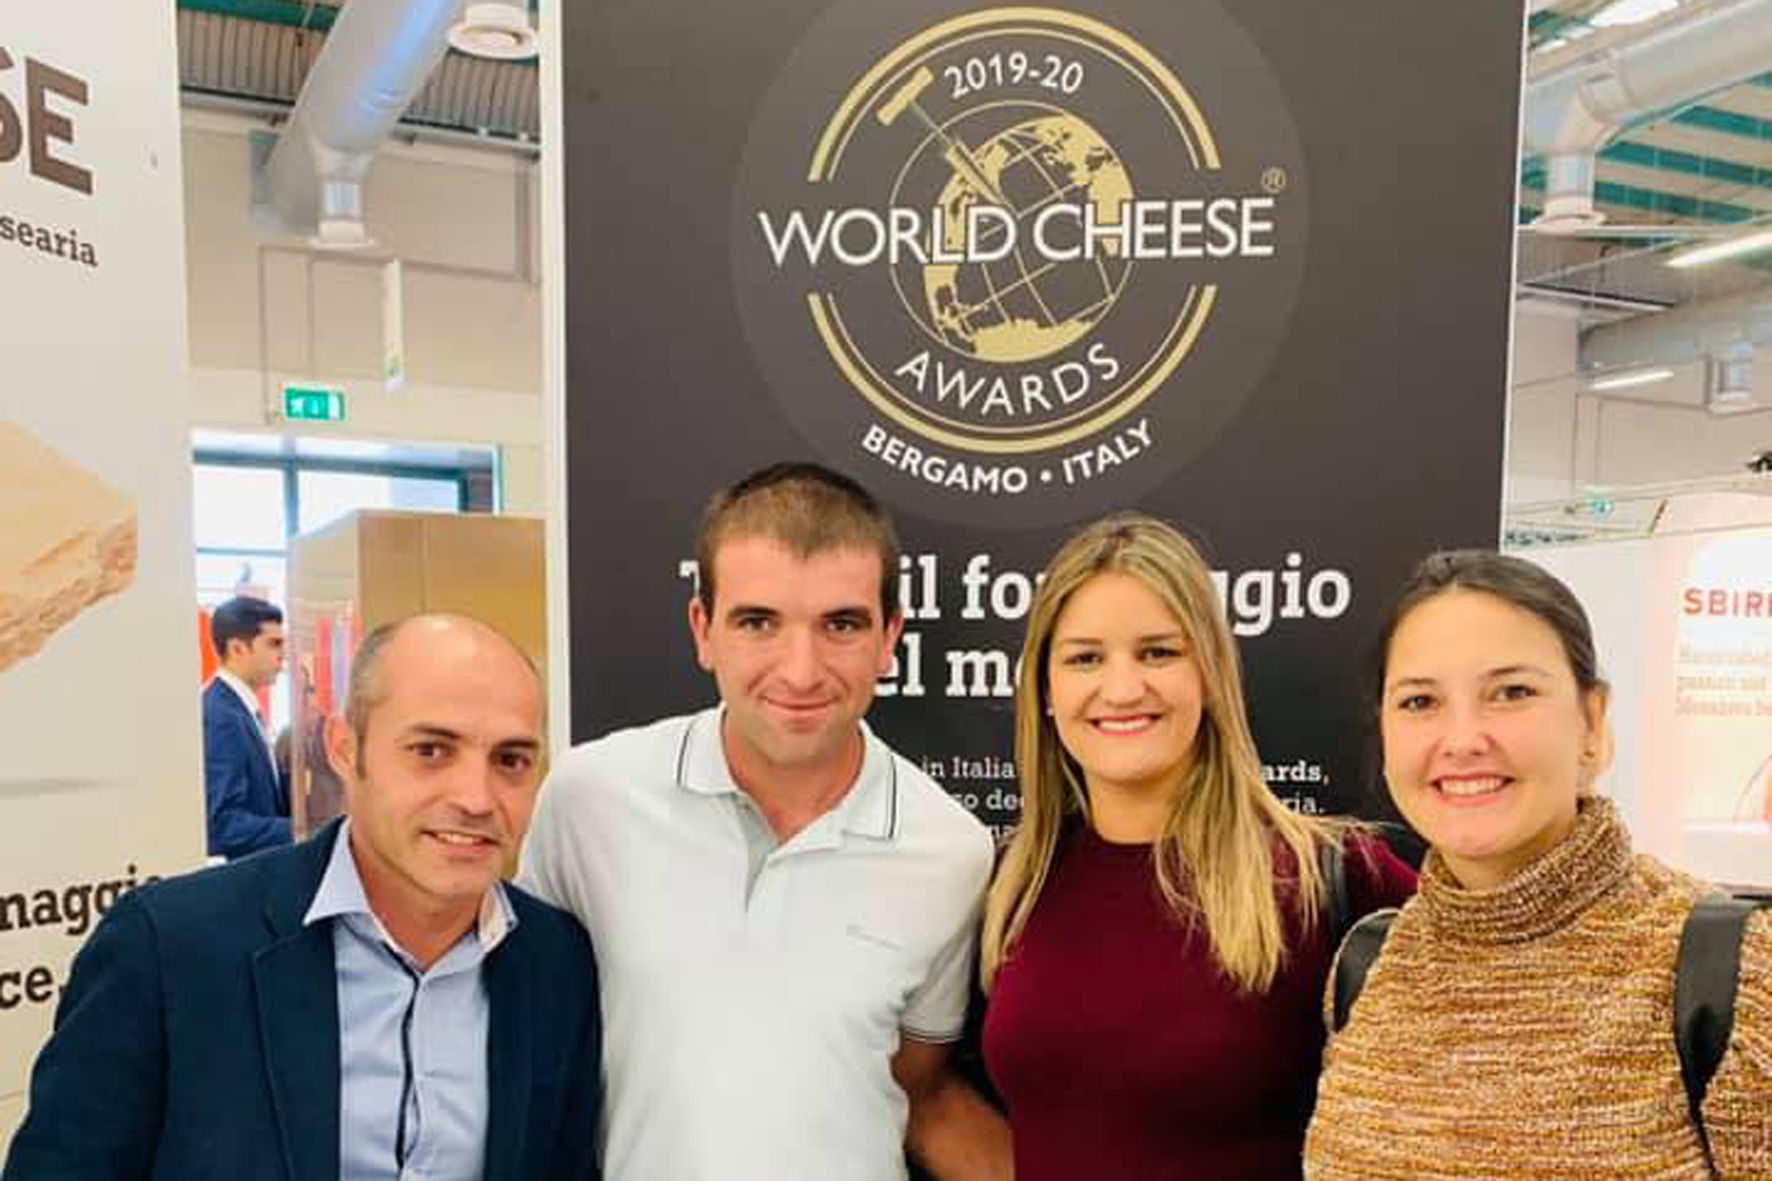 Los quesos herreños un año más en la World Cheese Awards 2019